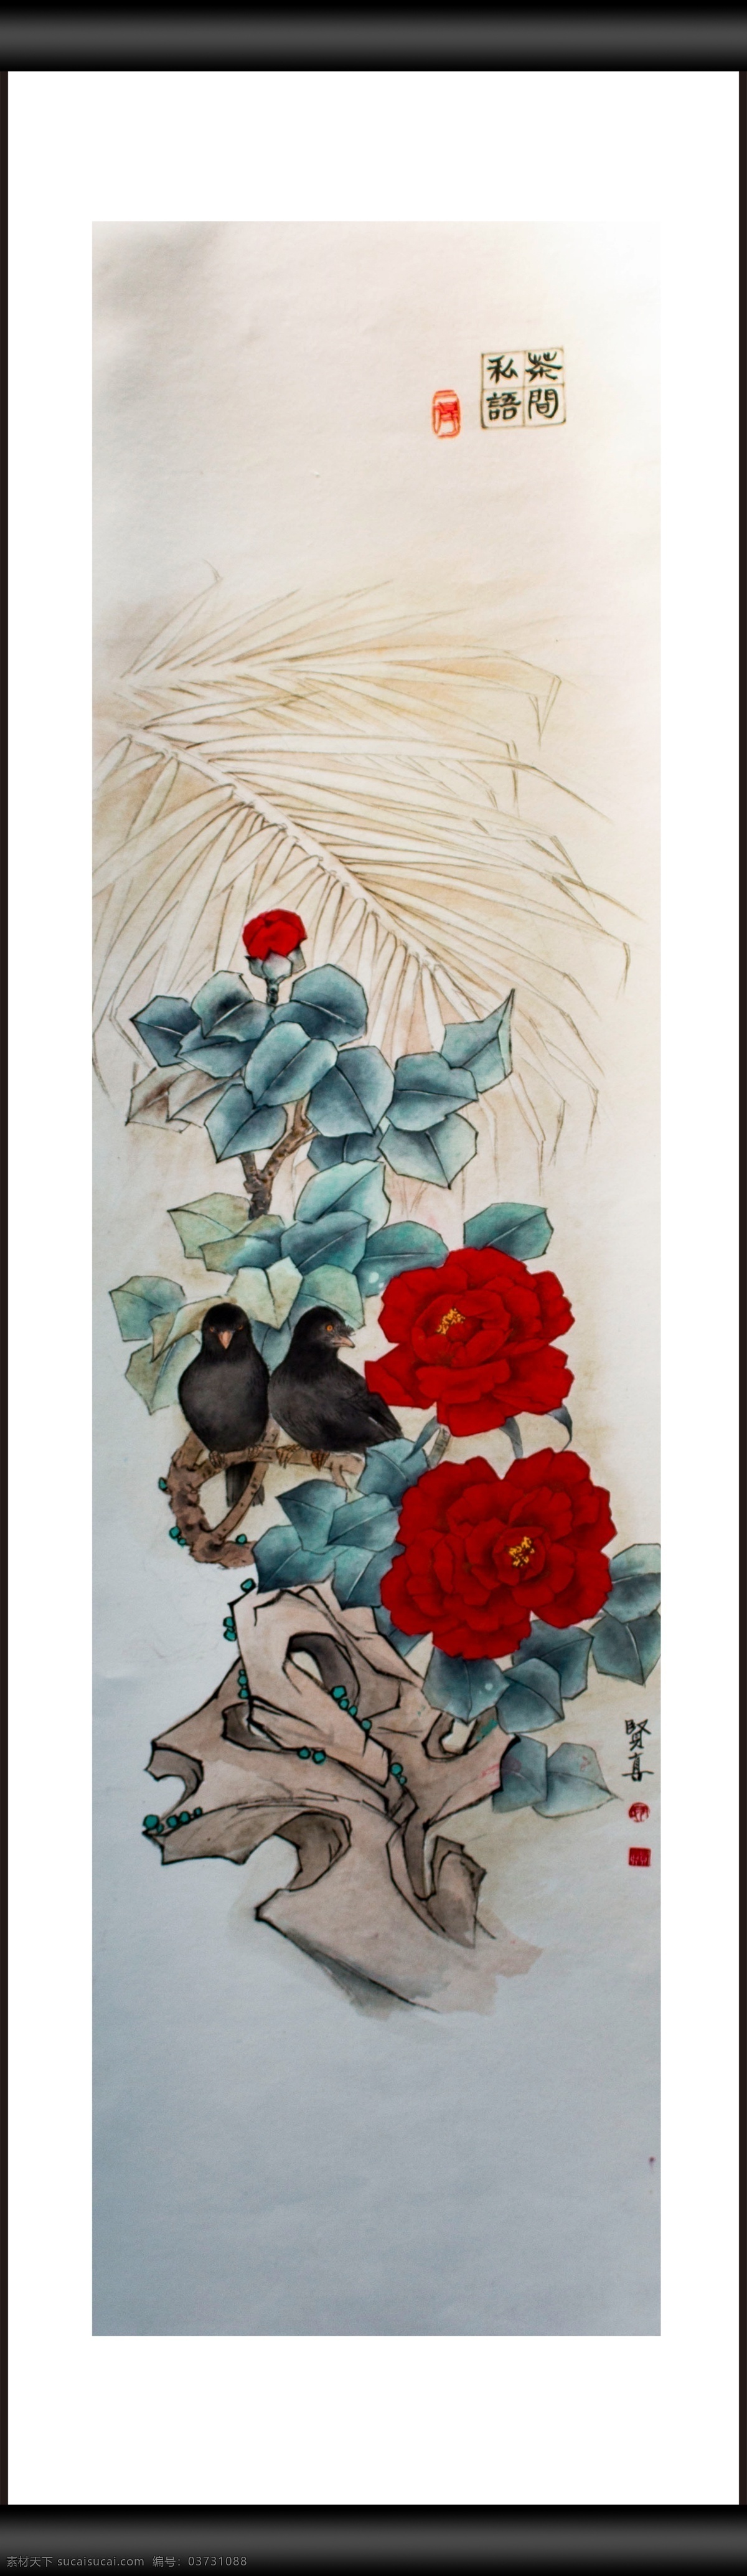 茶间私语 鸟儿 动物 一对 植物 花卉 观赏 绘画 插画 文化艺术 绘画书法